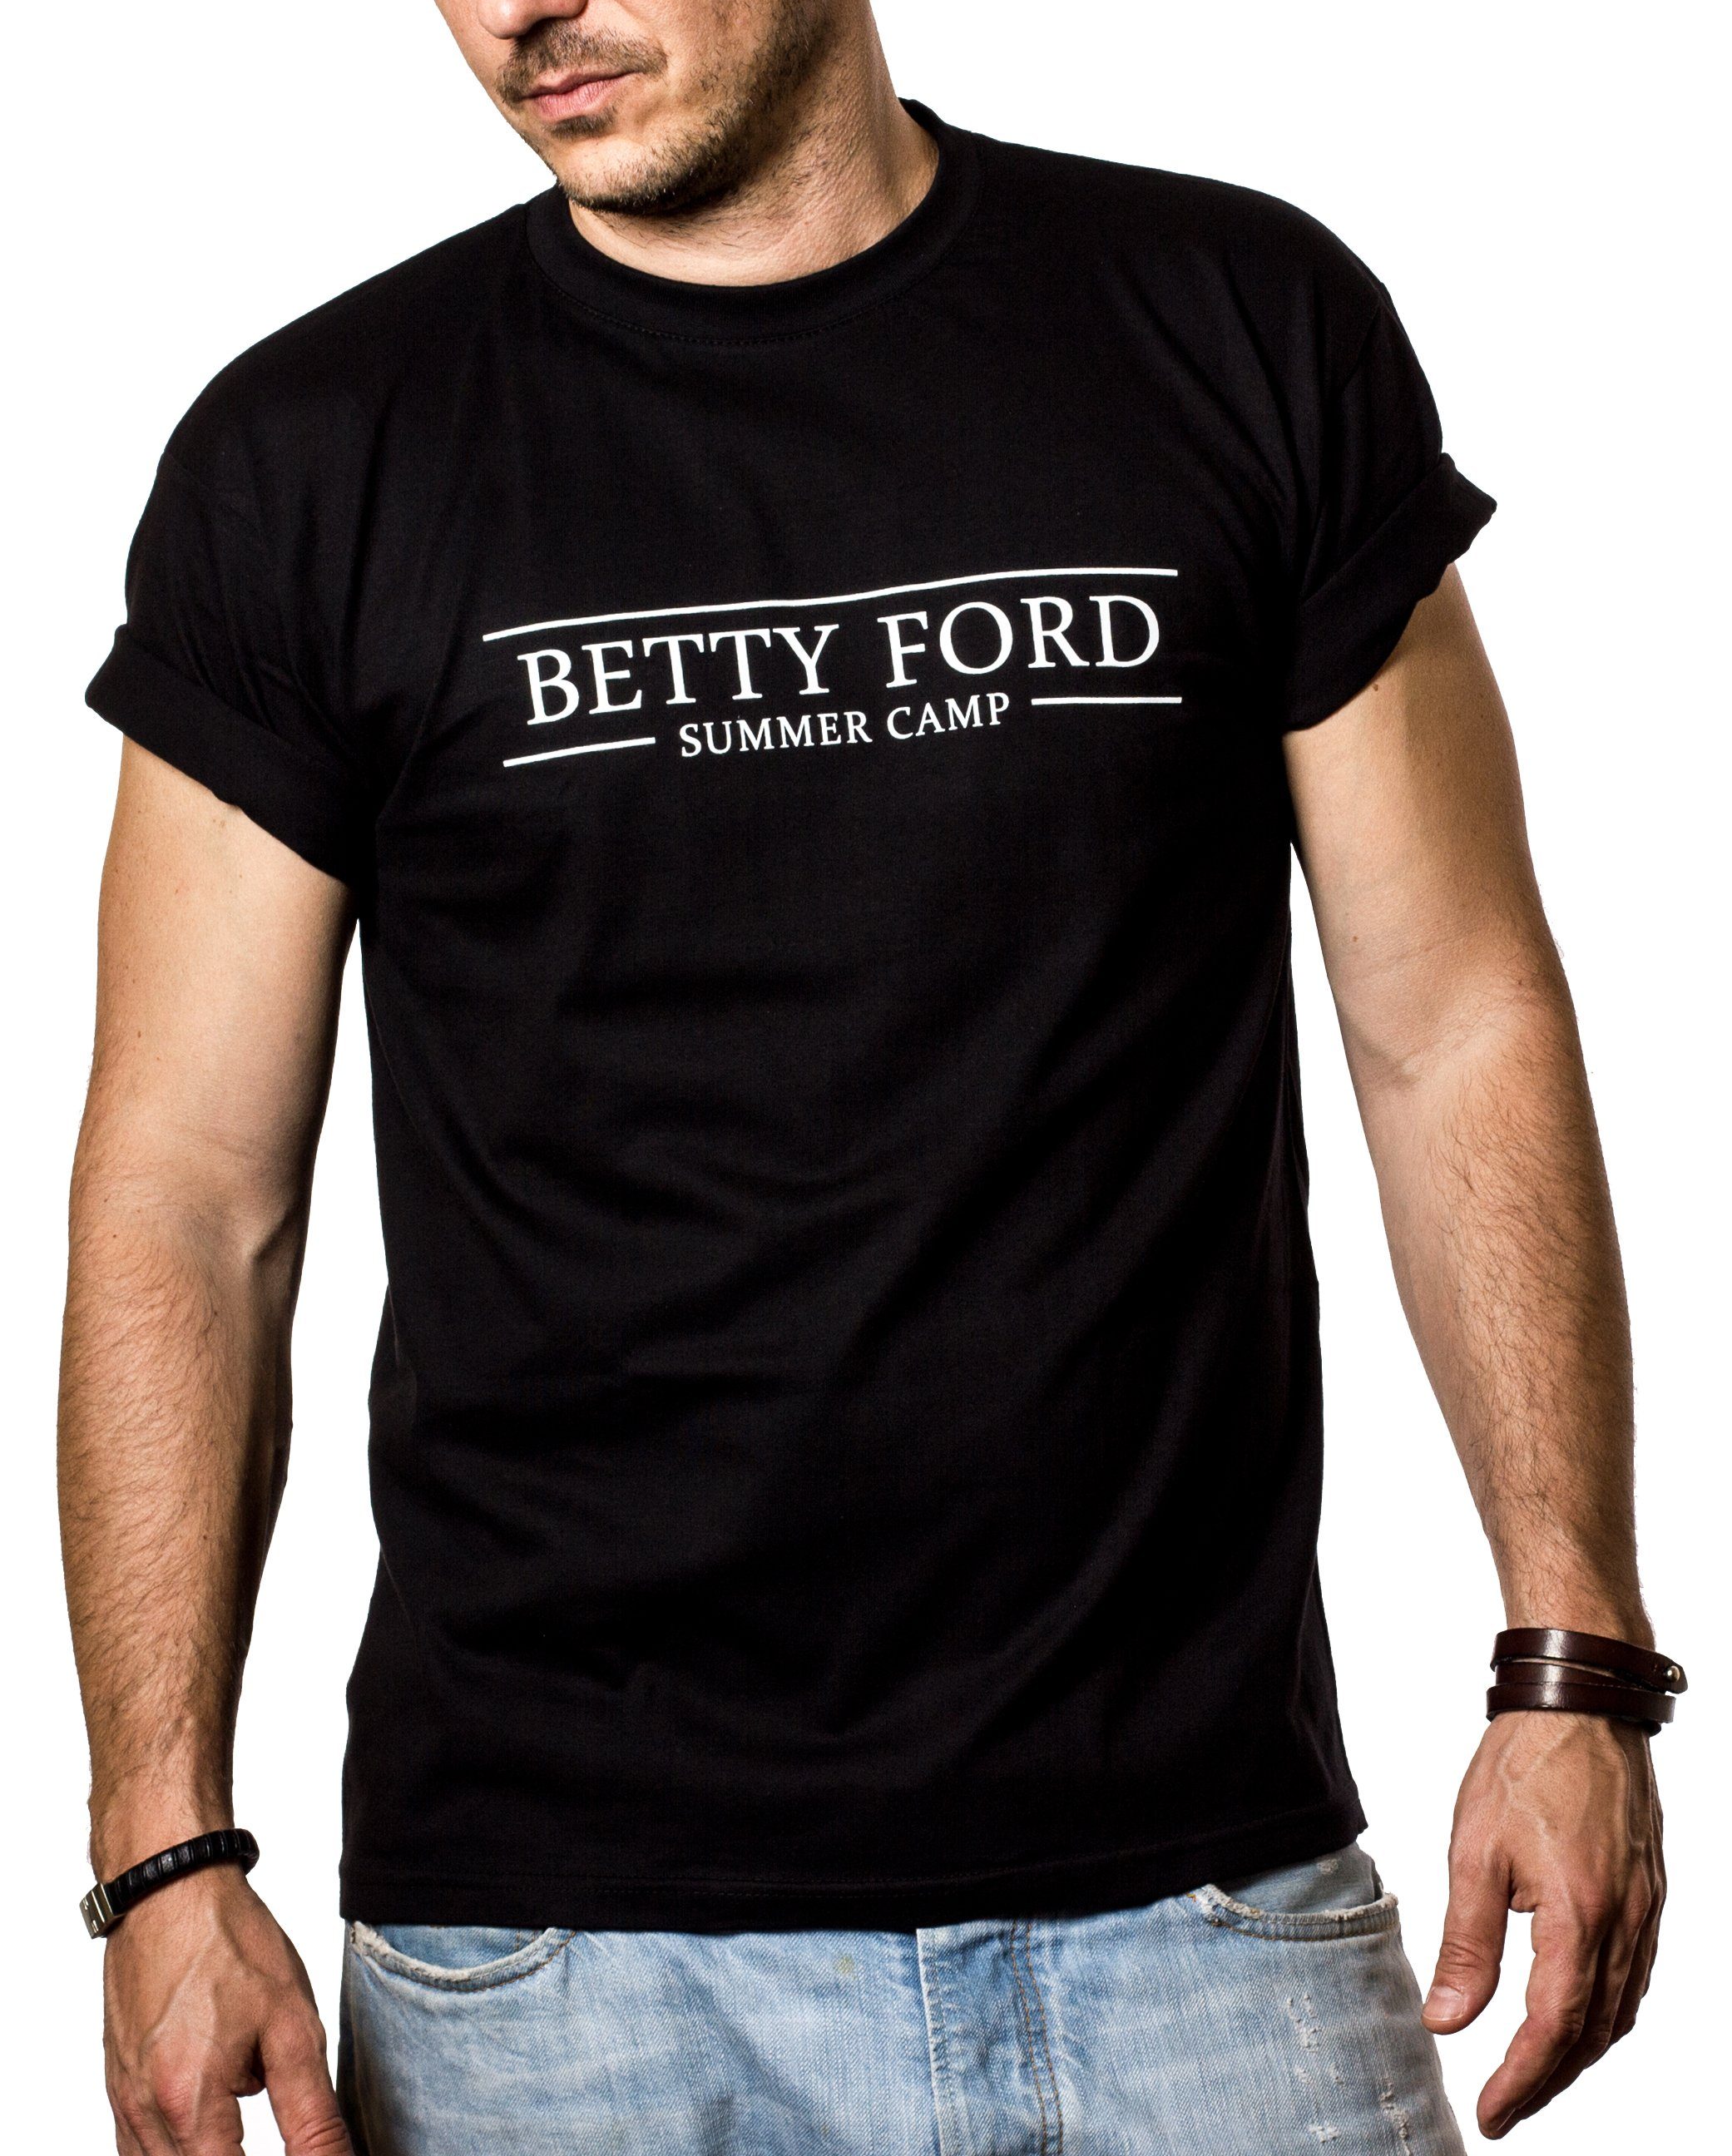 MAKAYA Print-Shirt Sprüche Lustig Betty Ford Druck mit Herren/Männer Grill Summer Camp Outfit Party